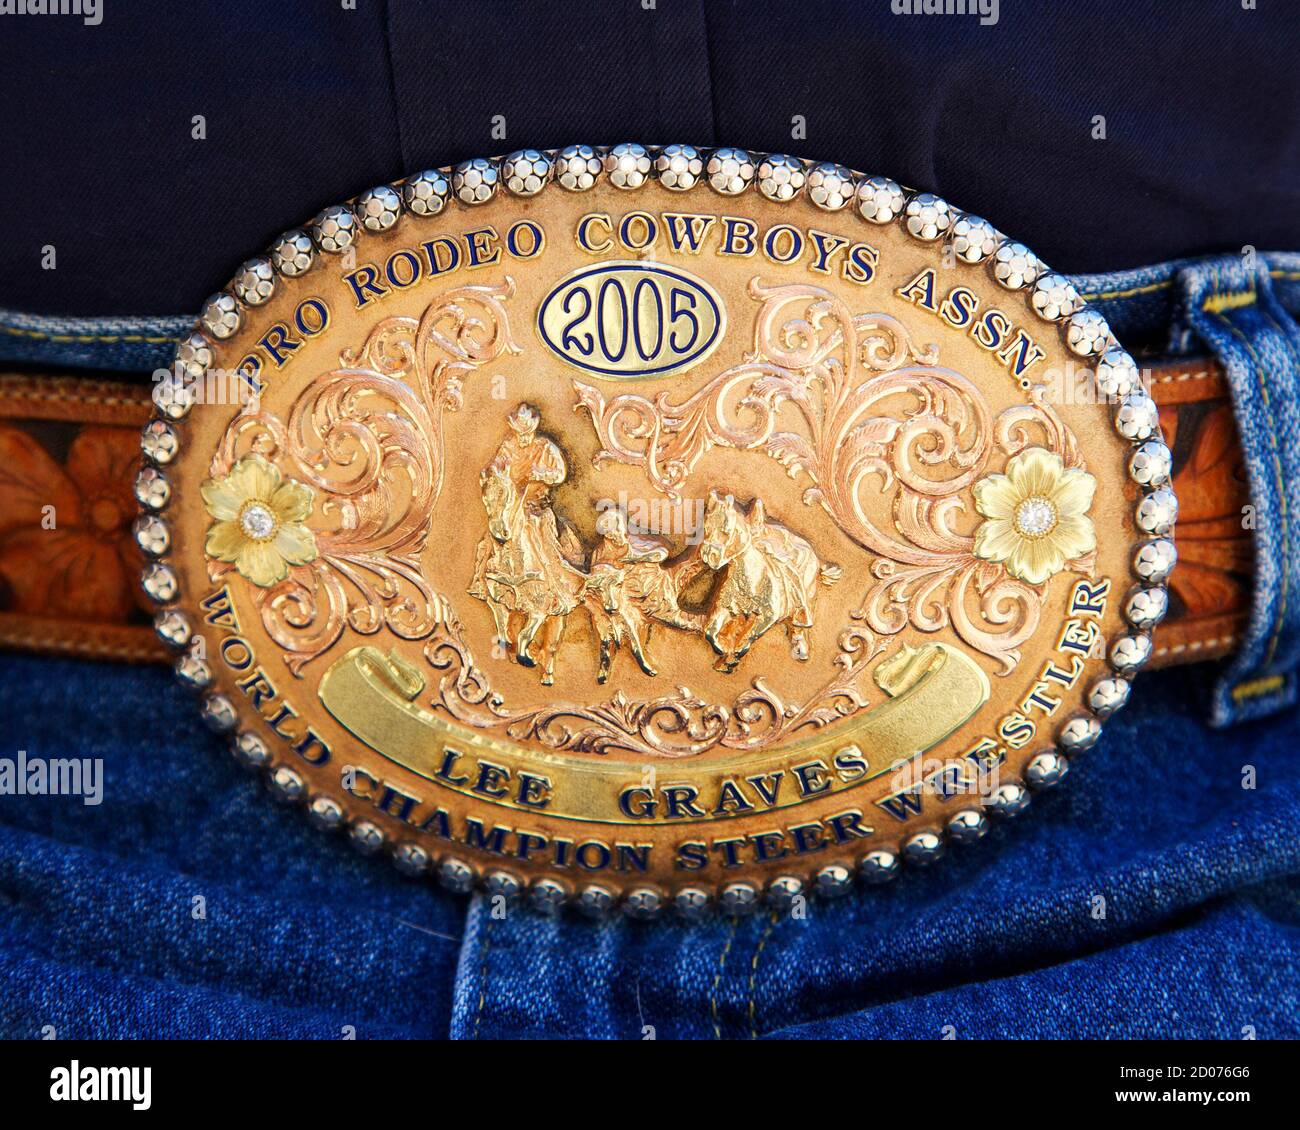 World champion belt immagini e fotografie stock ad alta risoluzione - Alamy